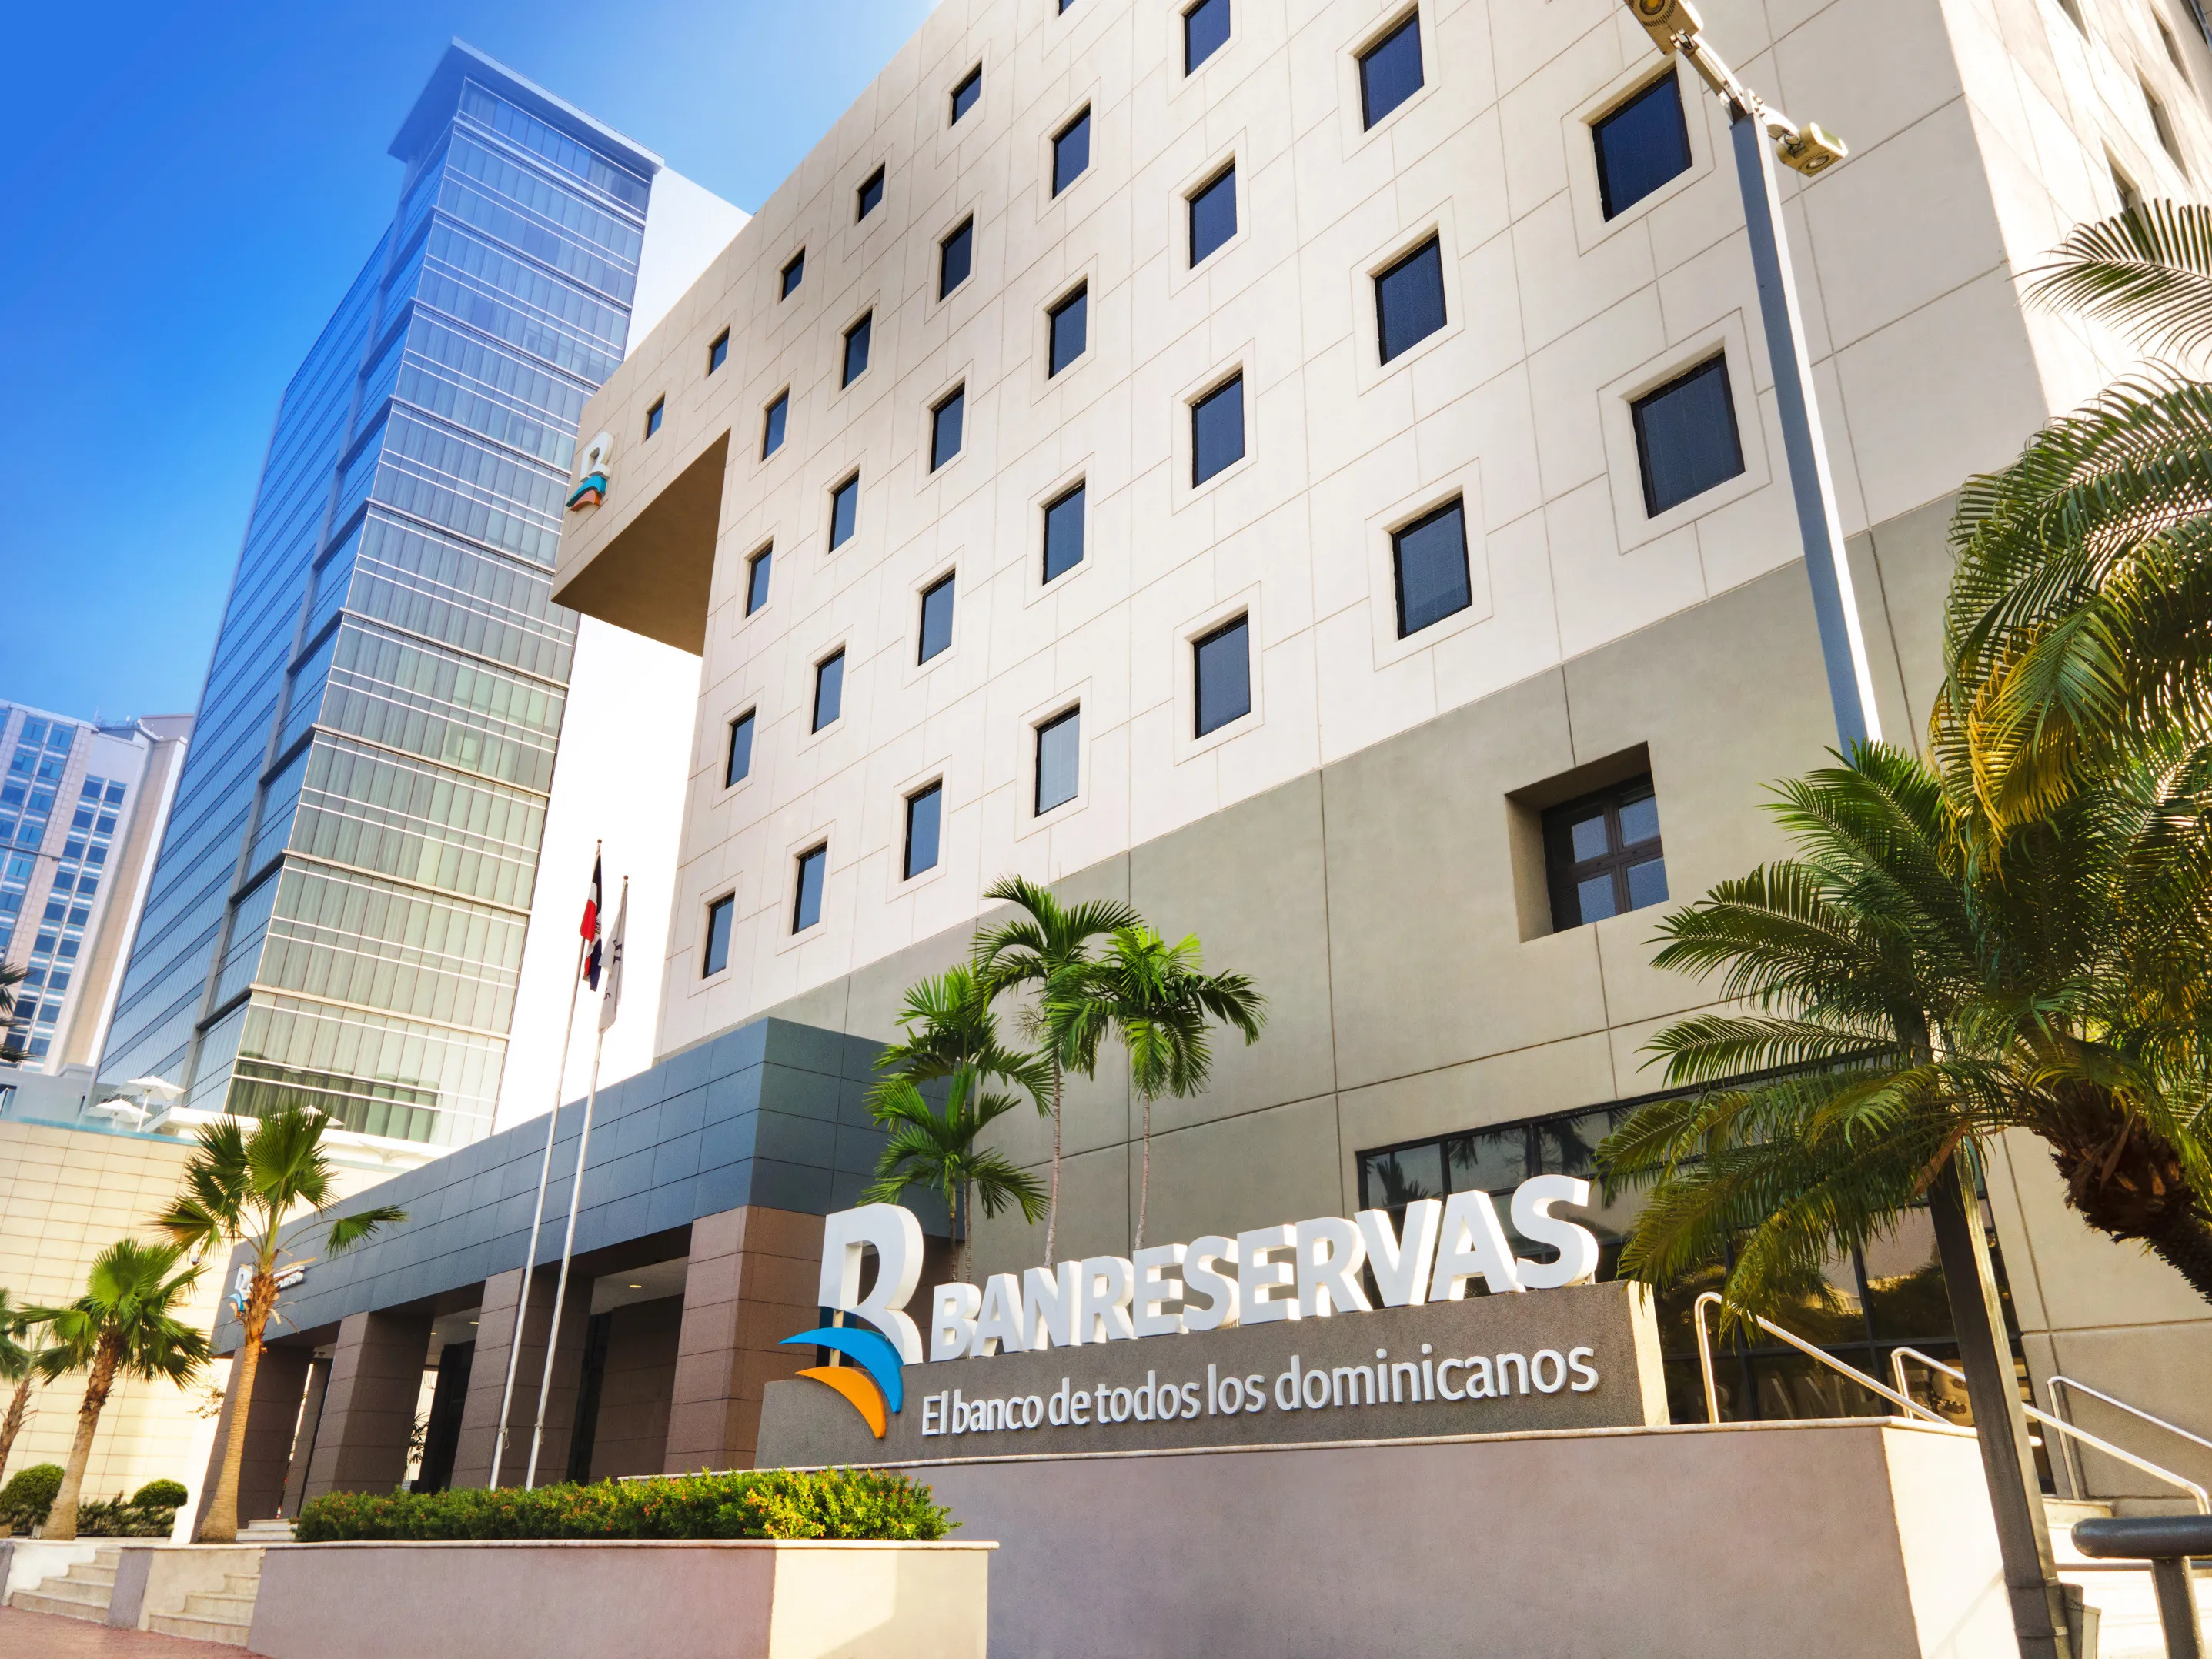 Banreservas supera sus números, su competencia y lidera en amplitud al sector bancario dominicano